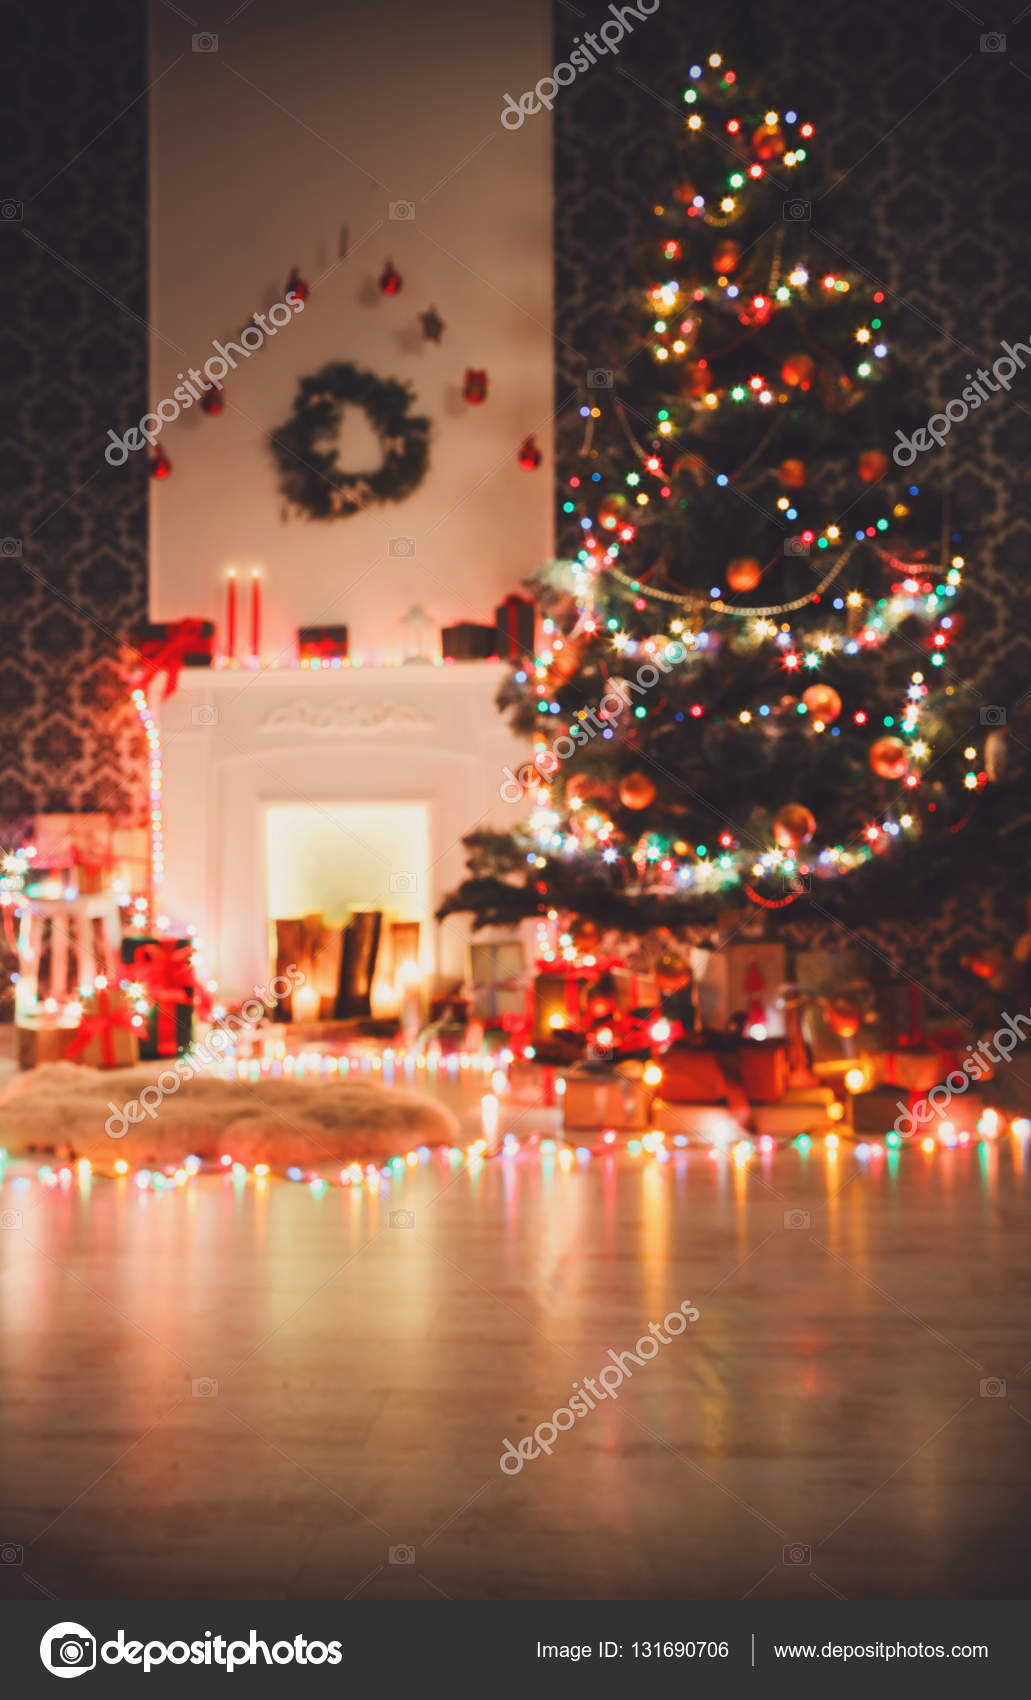 Luci Di Natale In Camera.Natale Camera Interior Design Albero Decorato In Luci Ghirlanda Foto Stock C Milkos 131690706